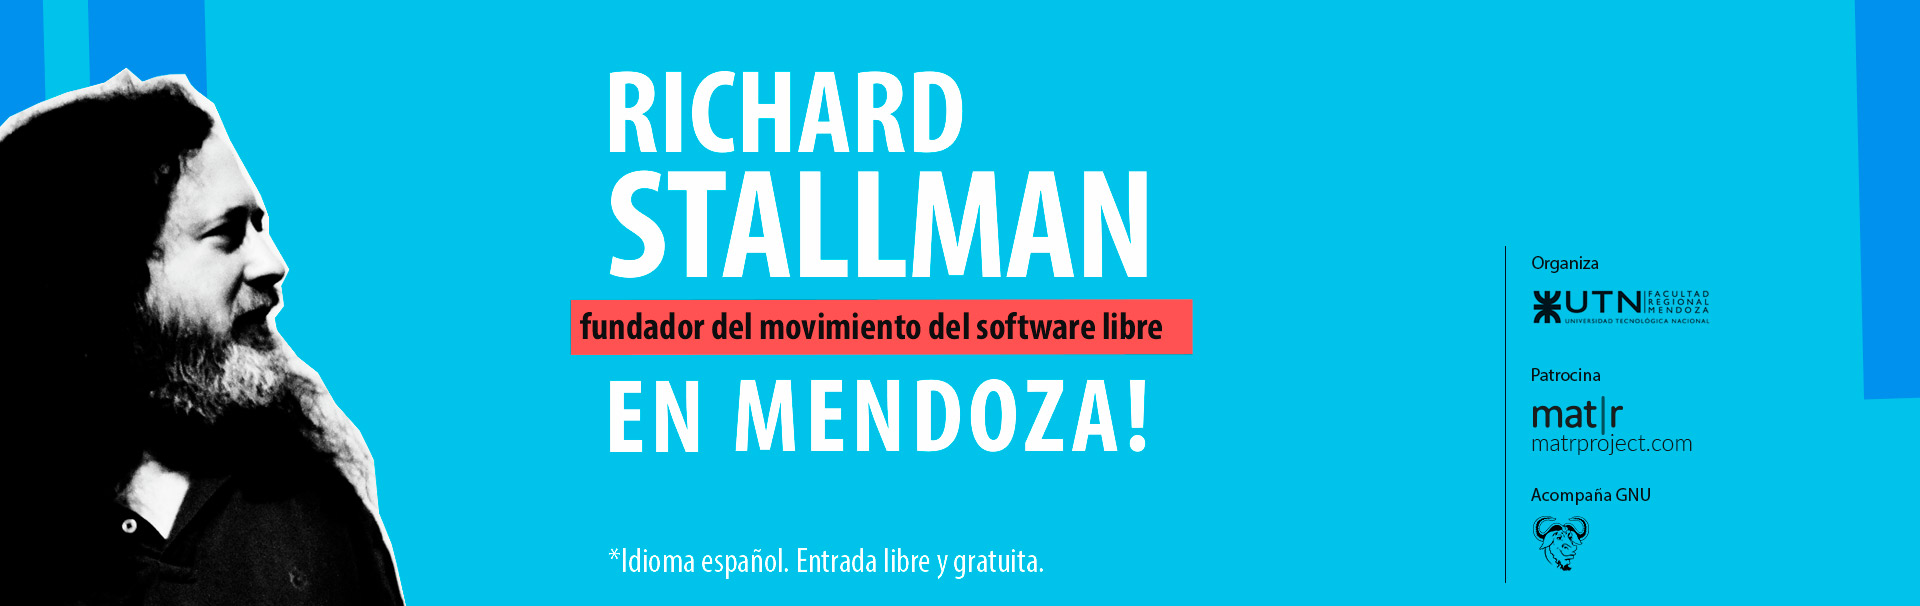 Richard Stallman en Mendoza. Patrocina Mat|r